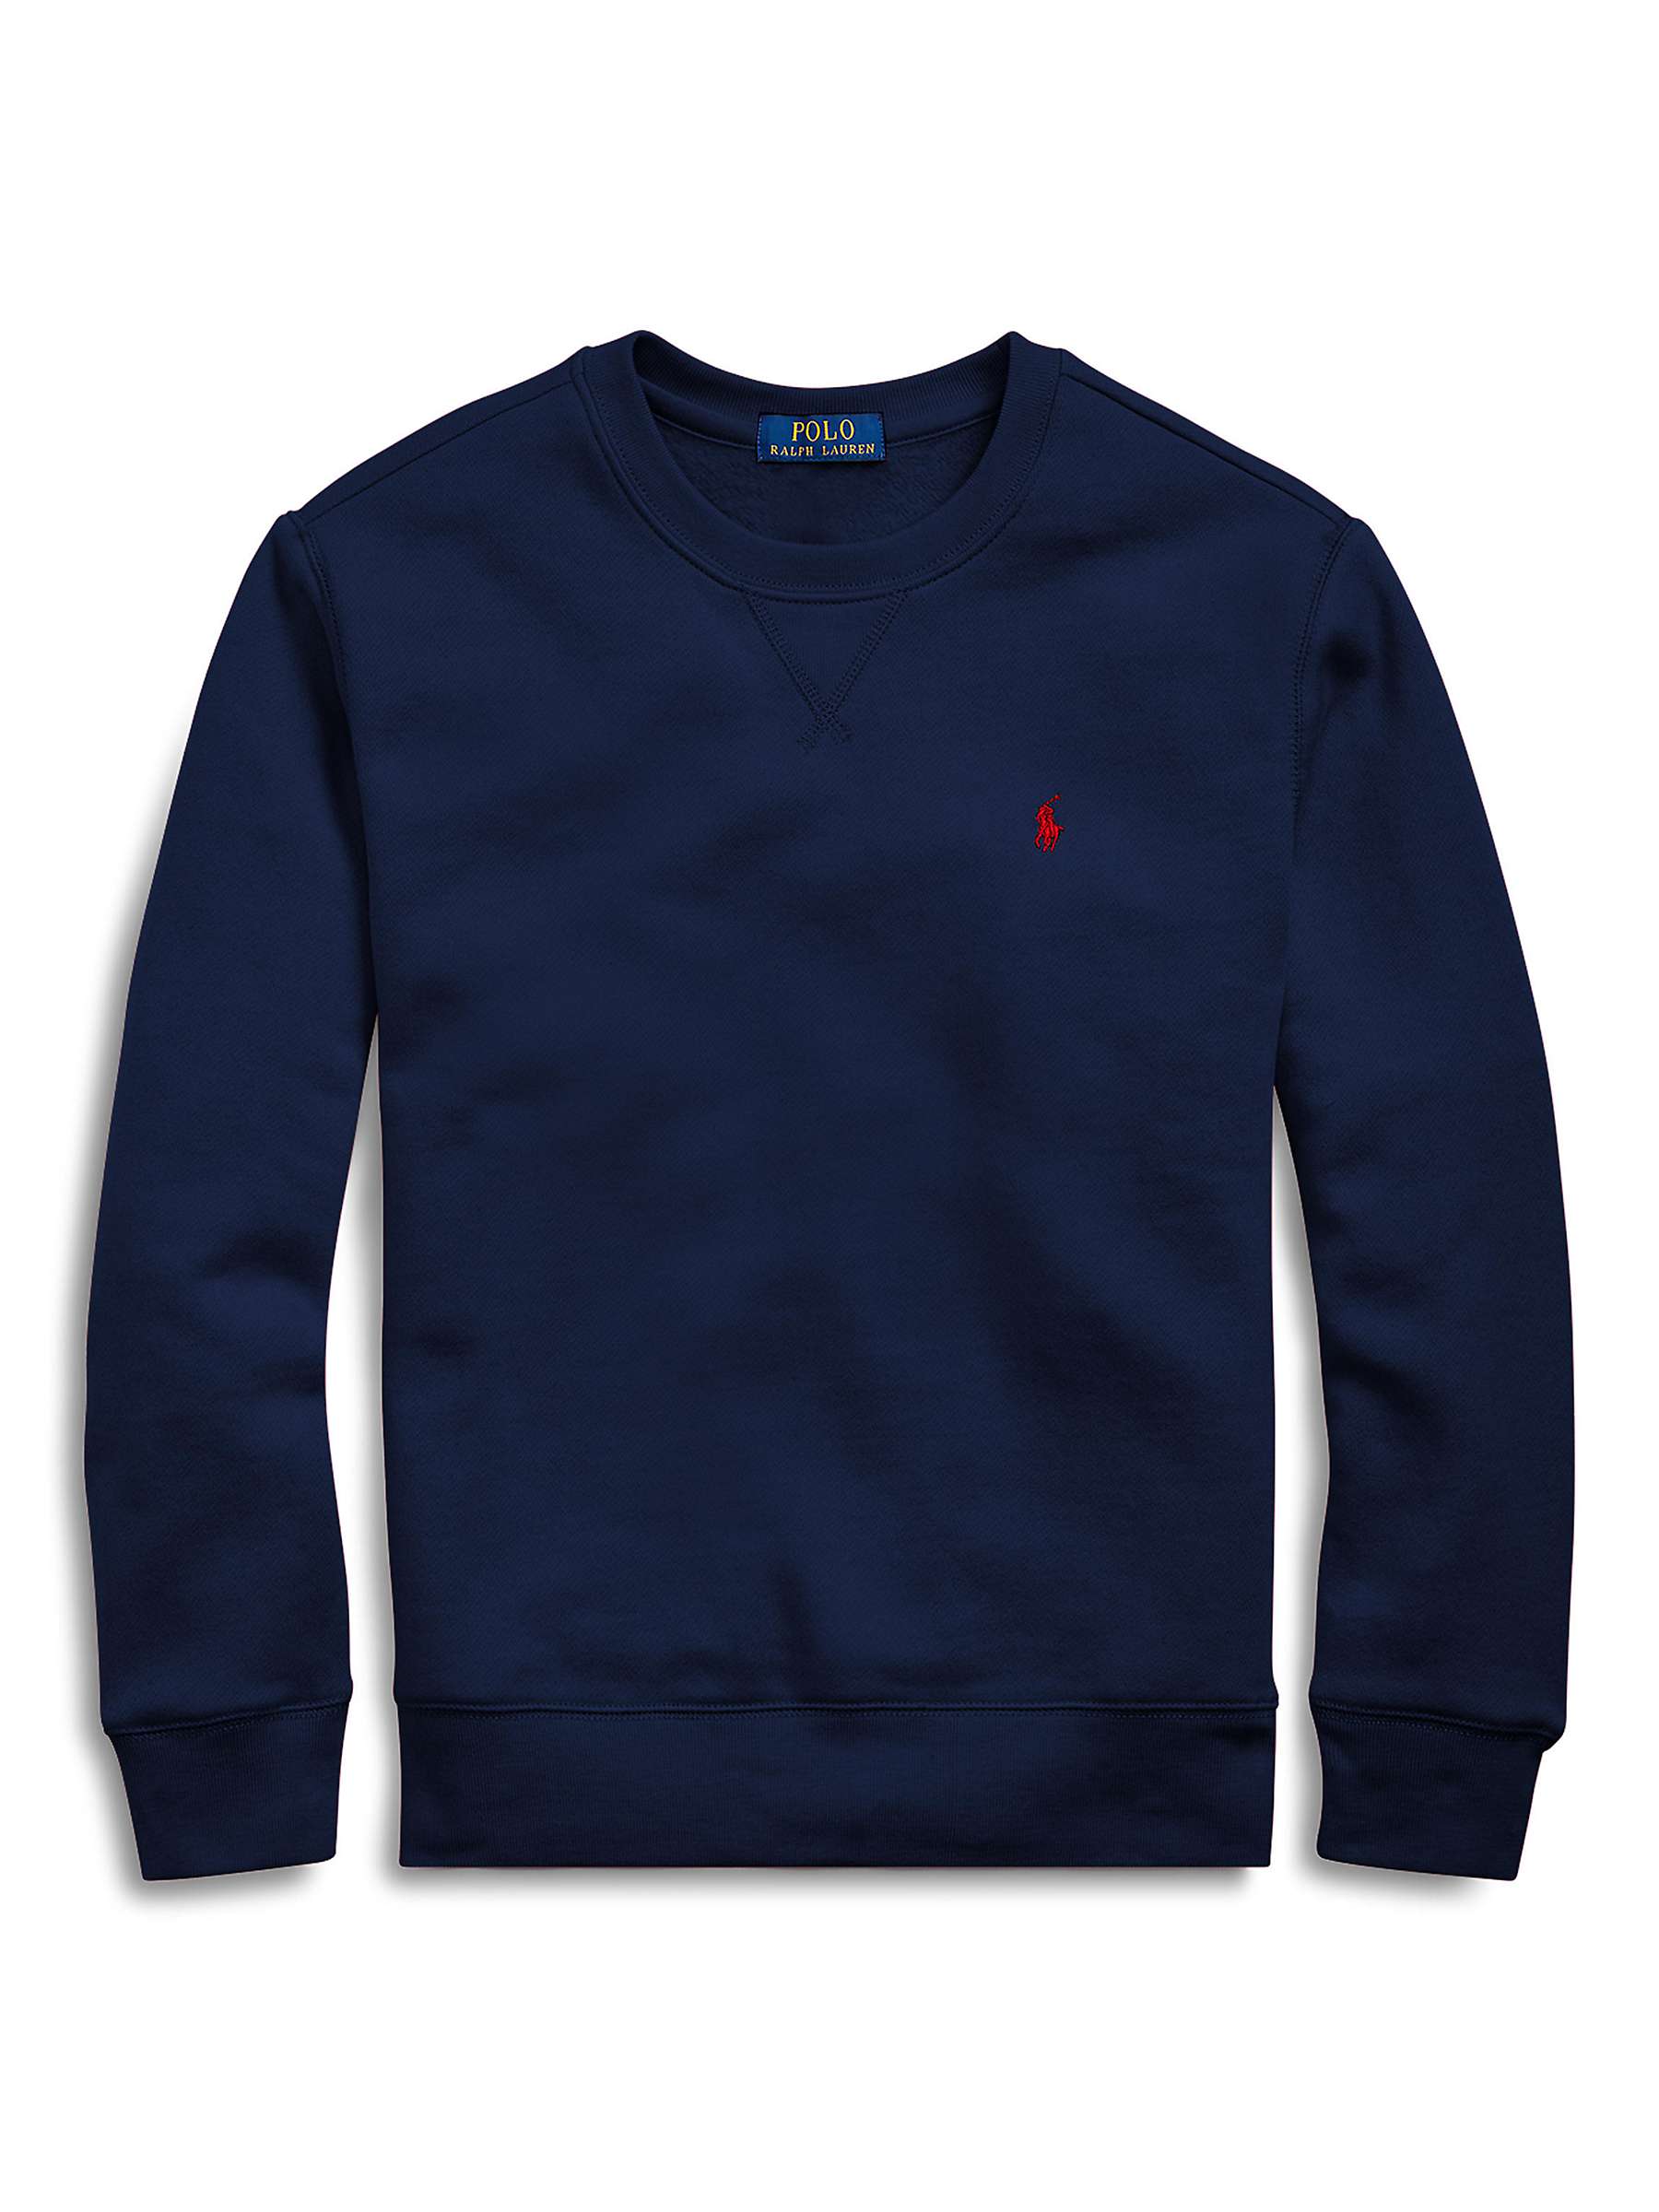 Buy Ralph Lauren Kids' Logo Basic Crew Neck Sweatshirt, Navy Online at johnlewis.com